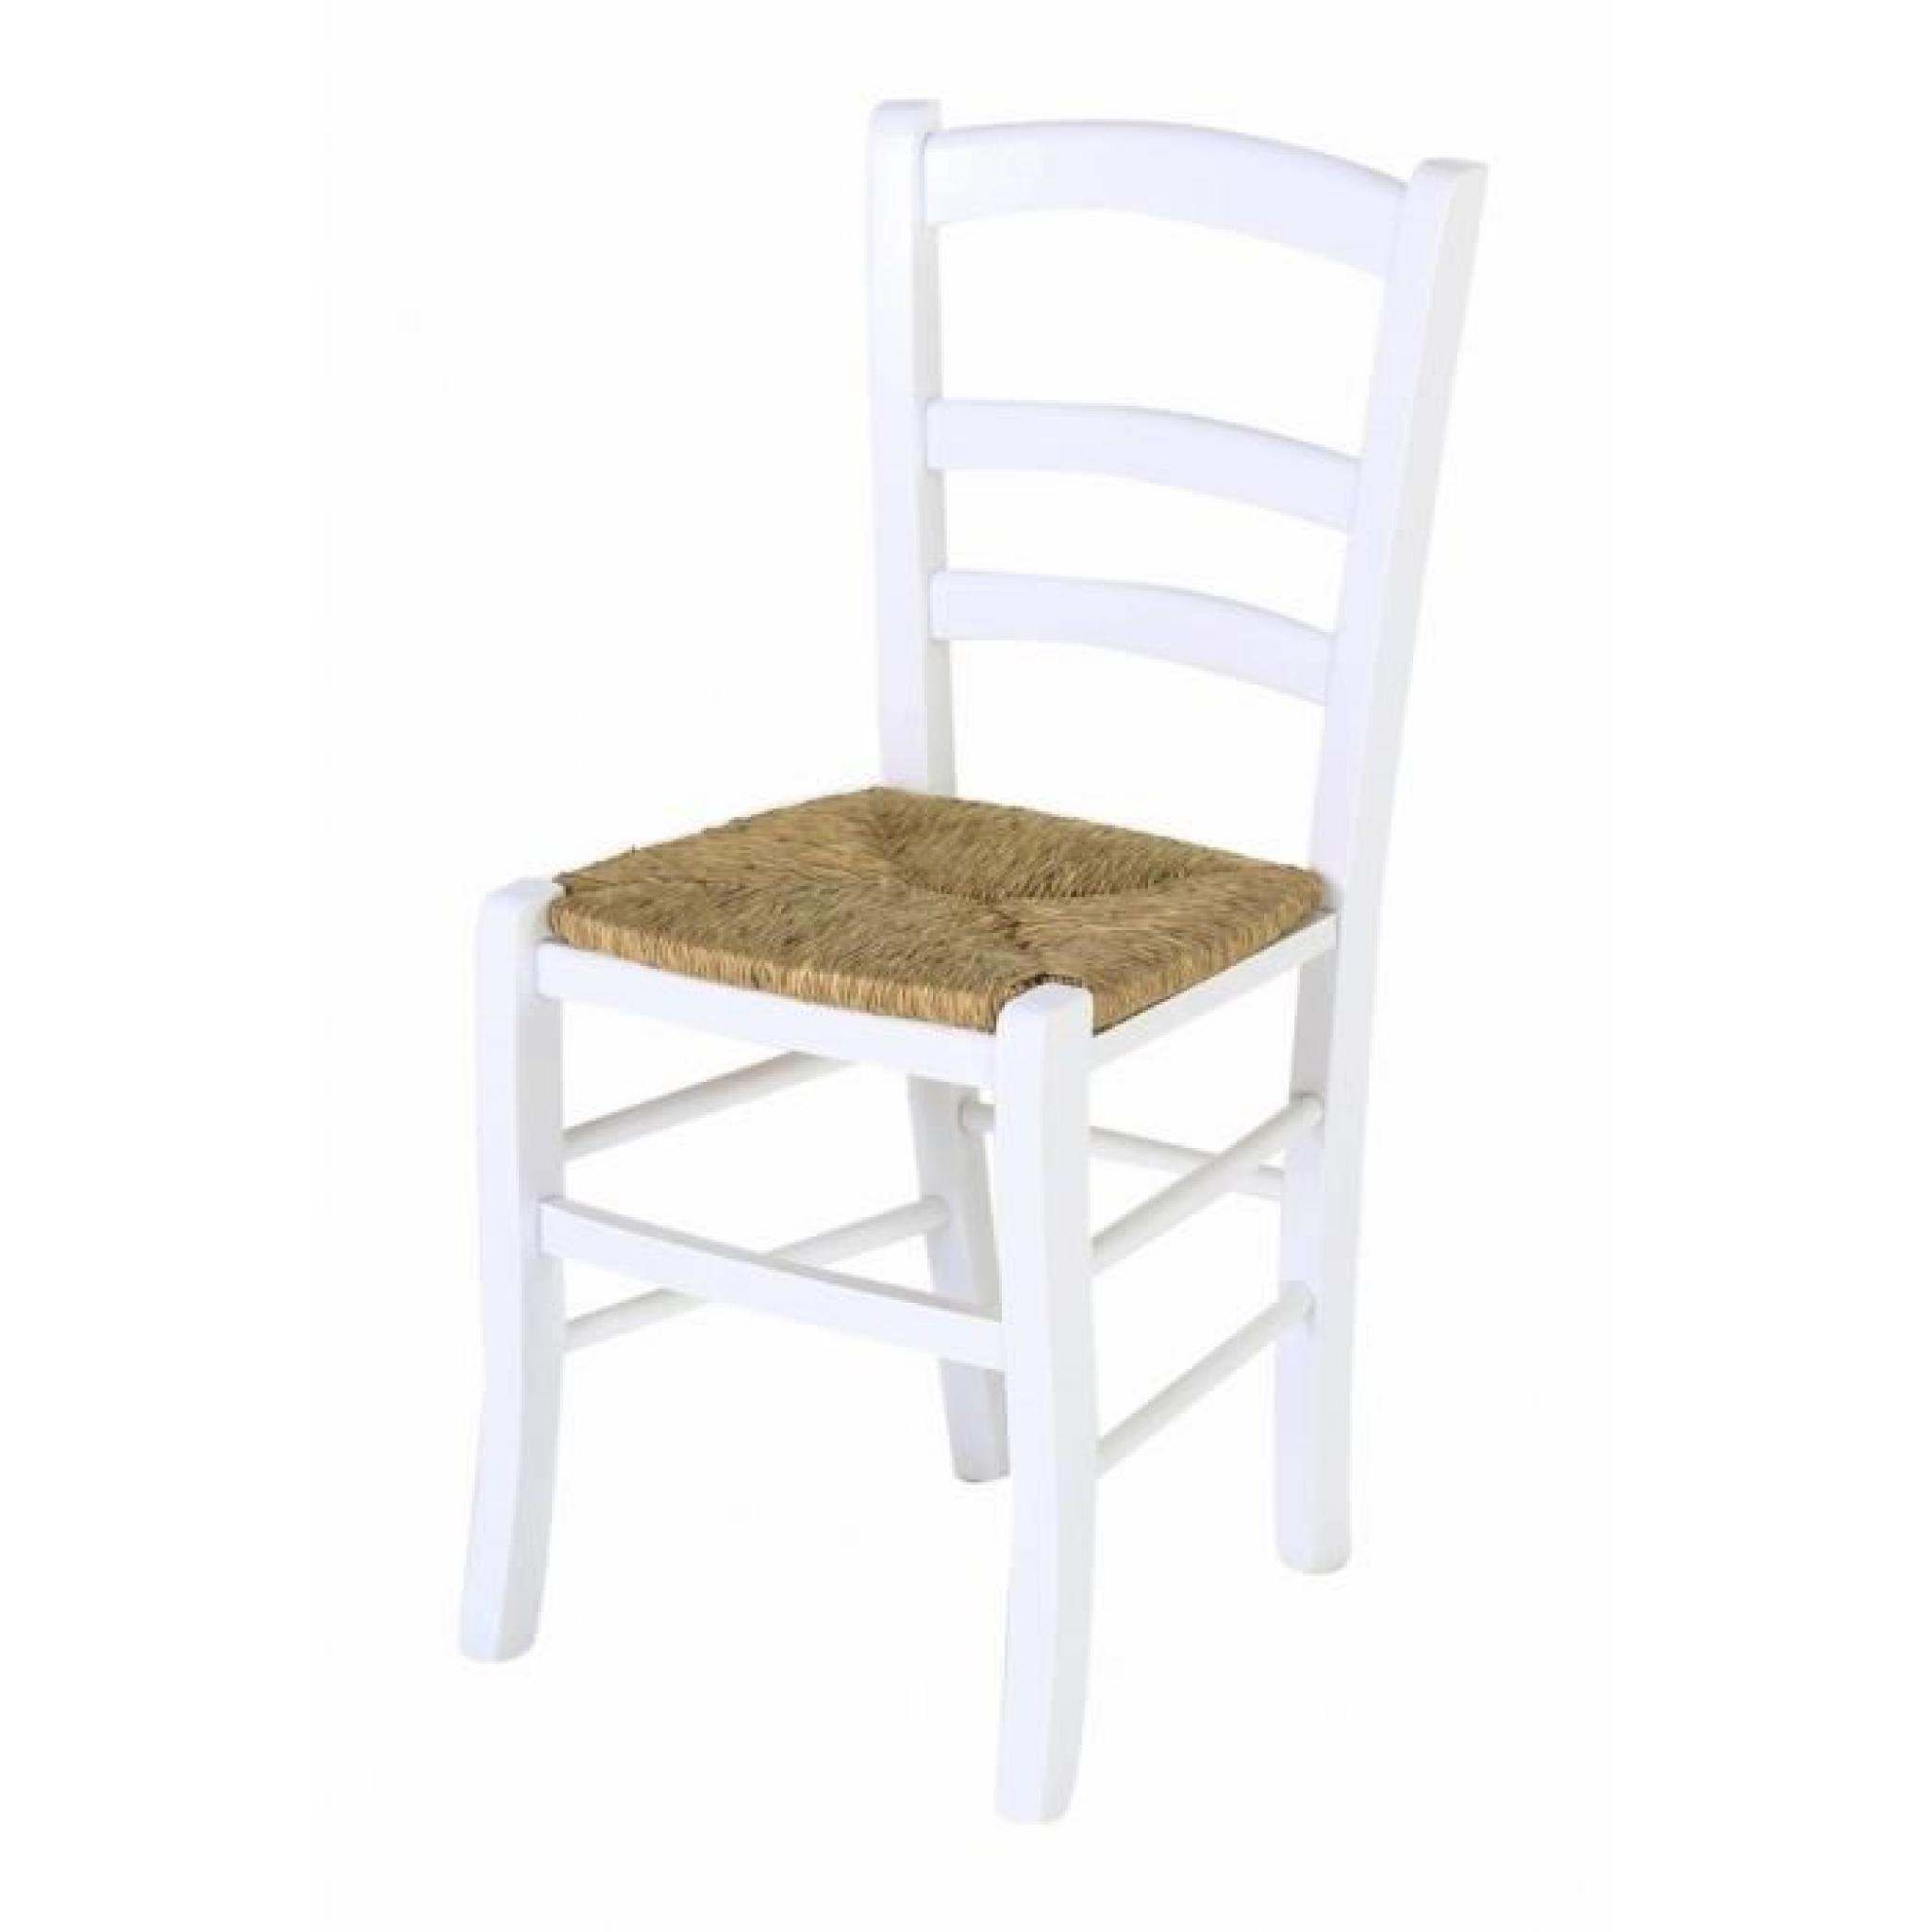 2 x Chaise hêtre massif blanc assise paille Sillingy - Pays pas cher